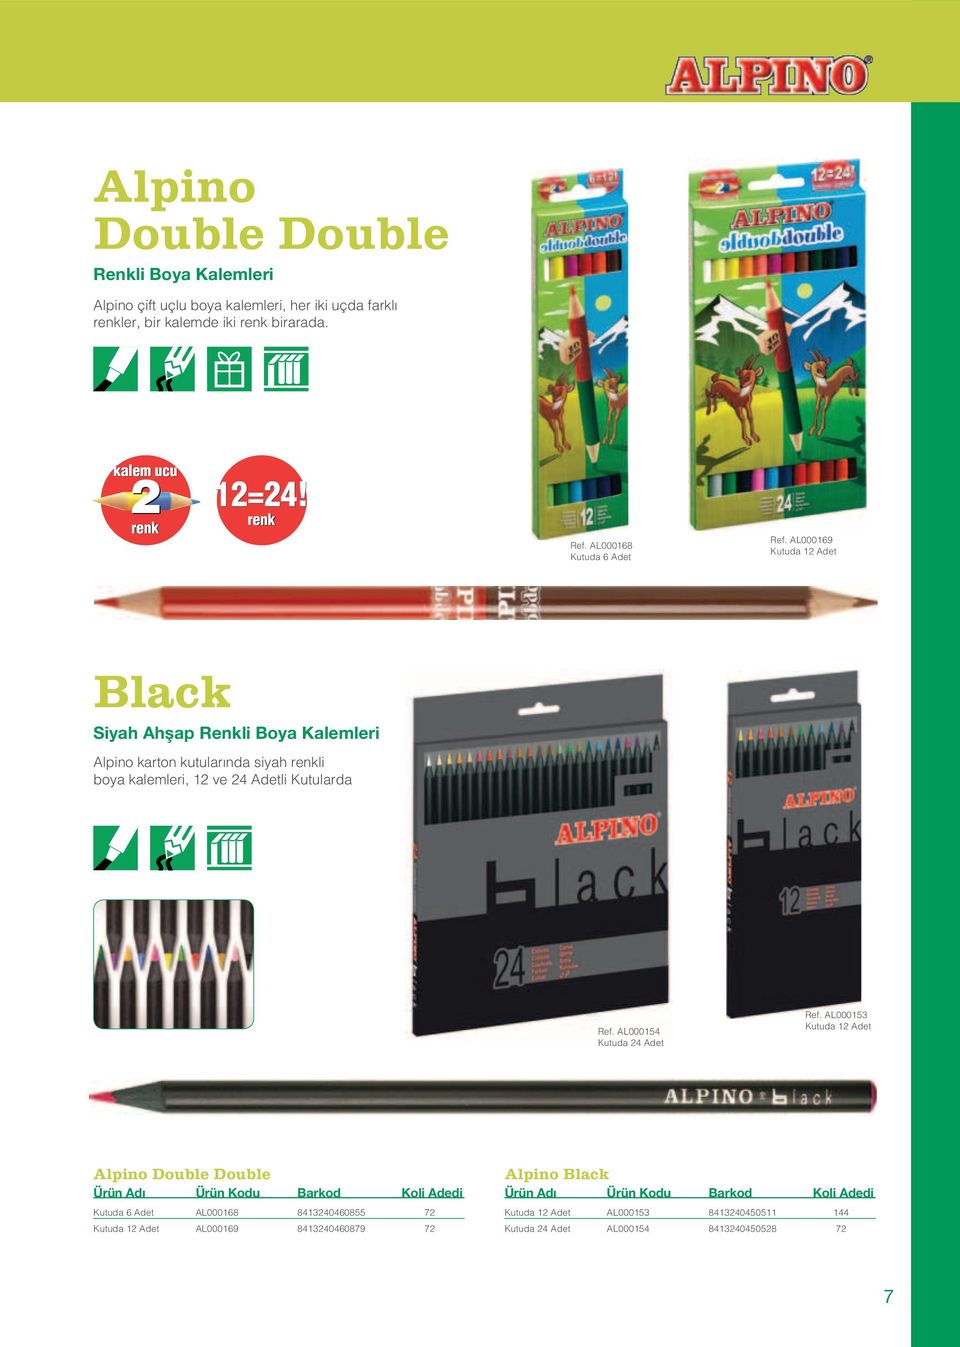 AL000169 Black Siyah Ahflap Renkli Boya Kalemleri Alpino karton kutularında siyah renkli boya kalemleri, 12 ve 24 Adetli Kutularda Ref.